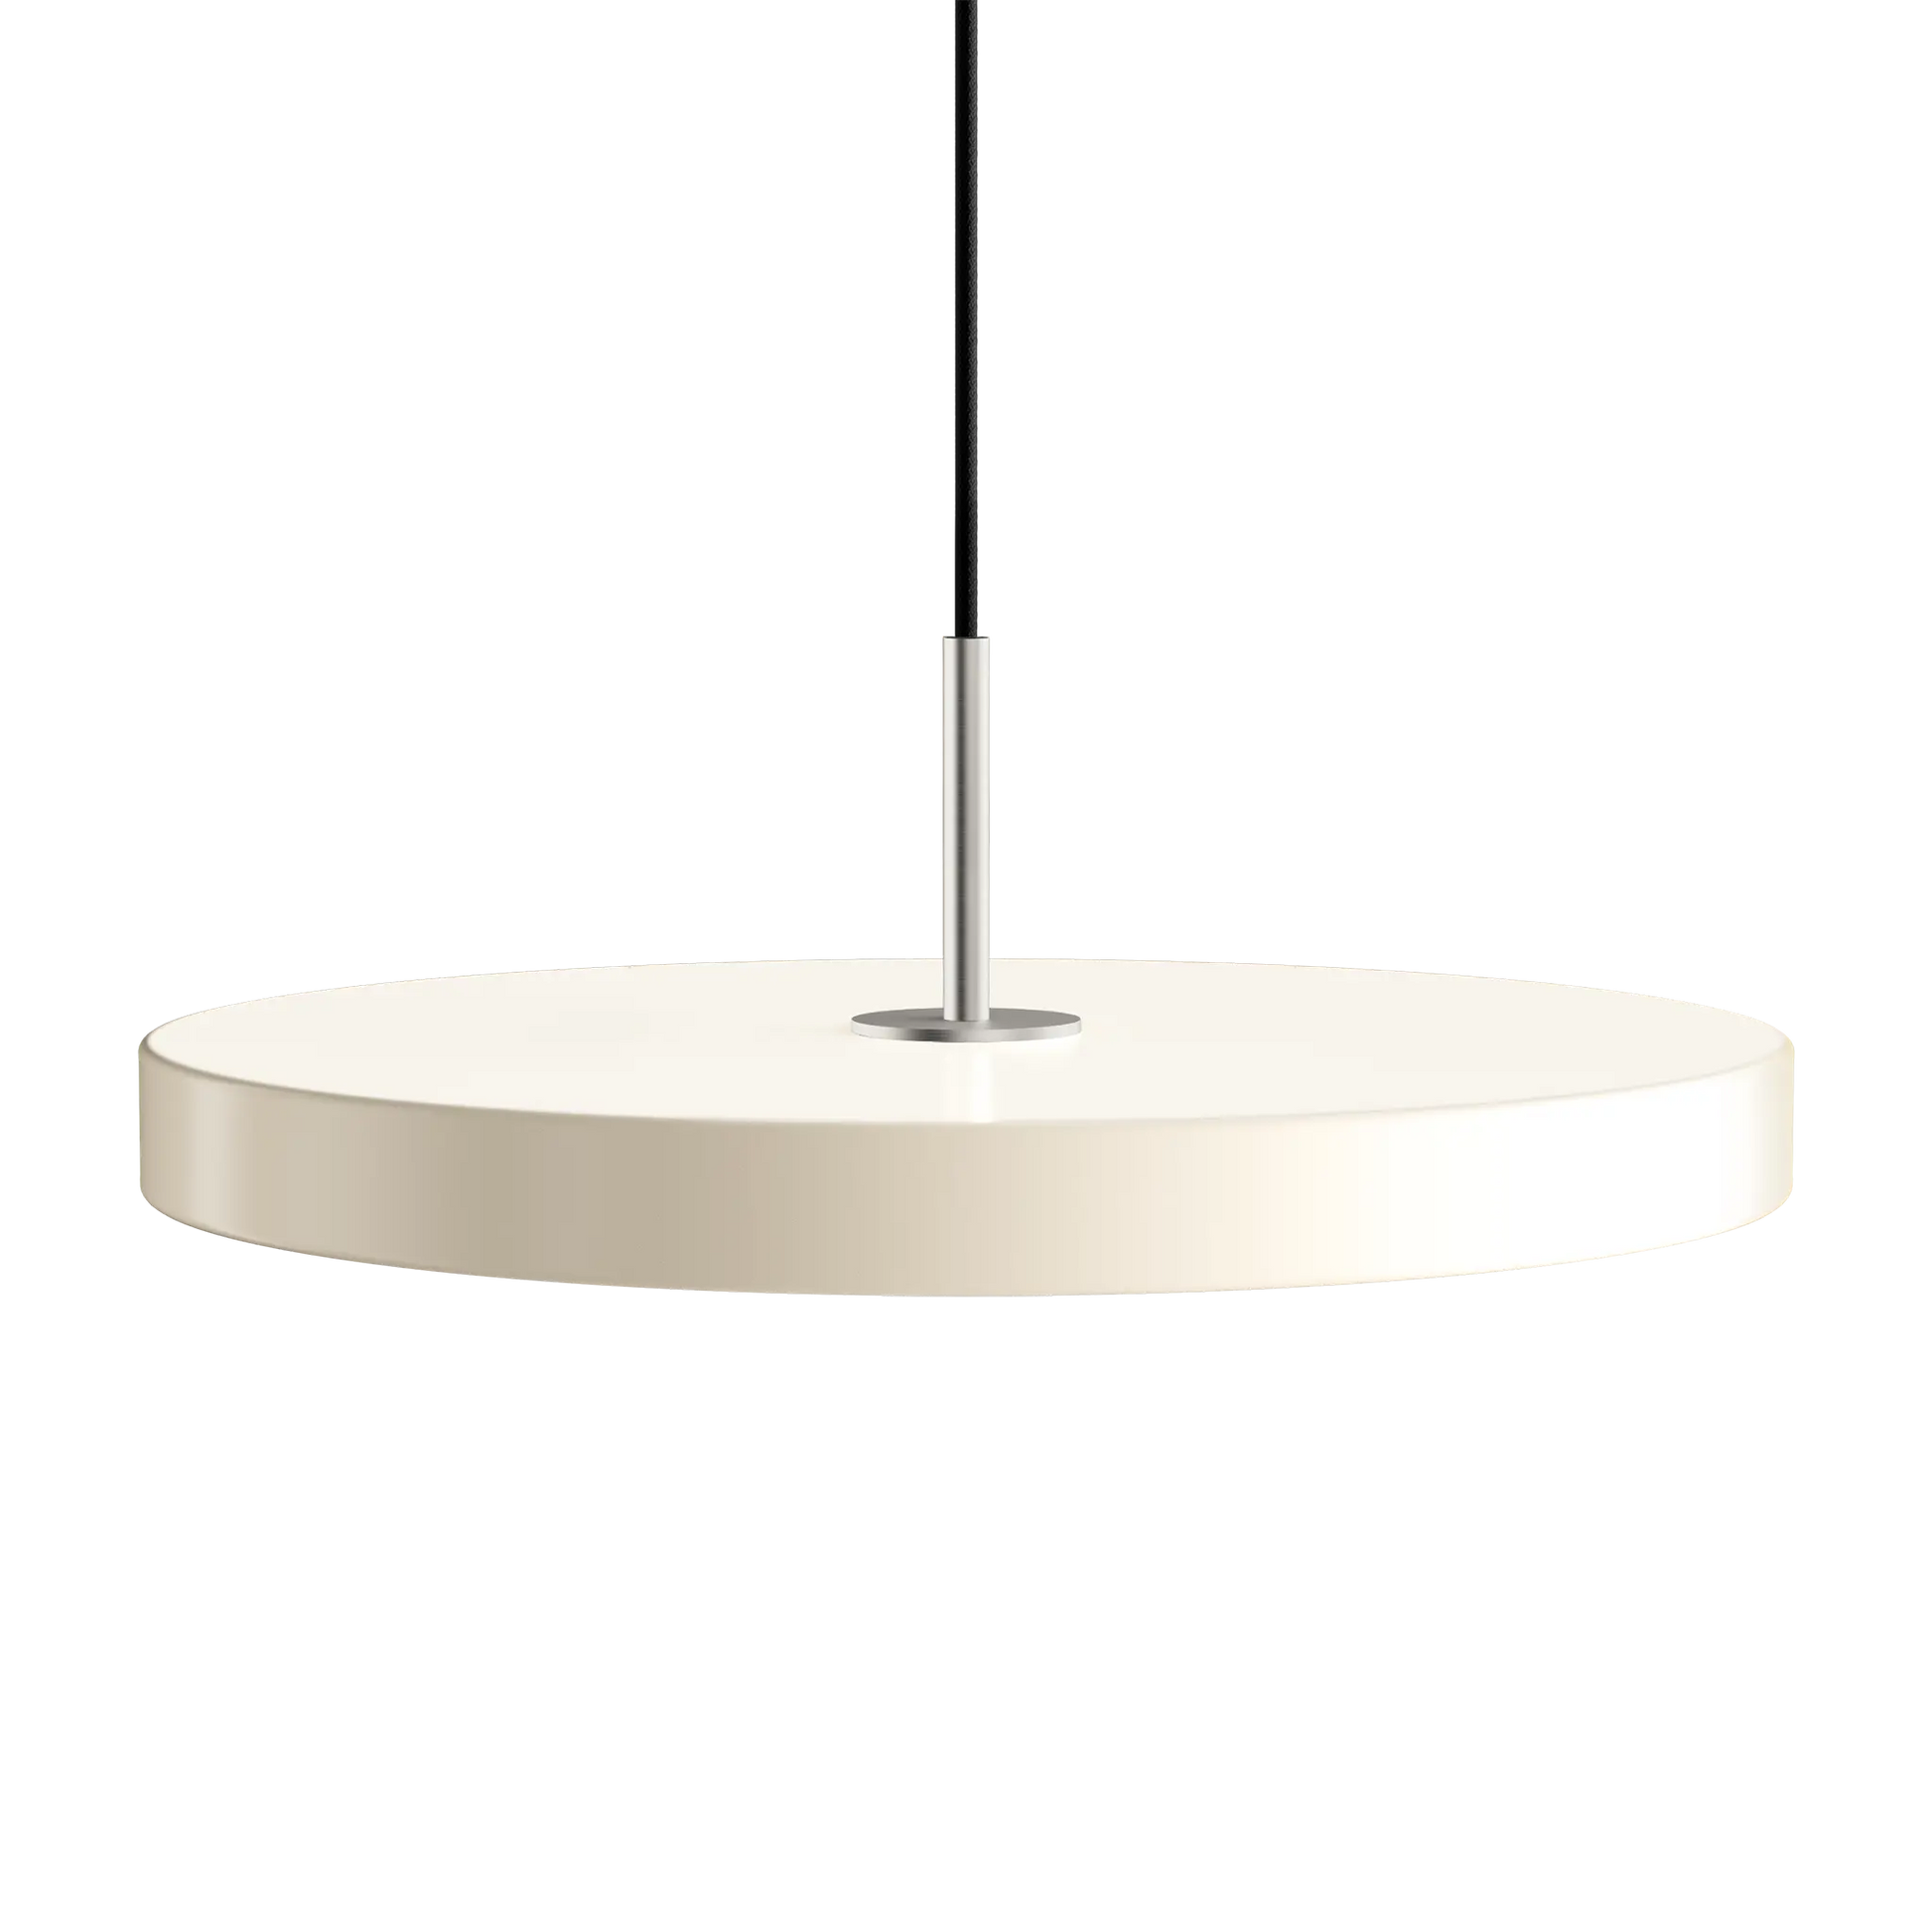 Asteria Medium taklampa med ståltop i färgen Pearl White från Umage